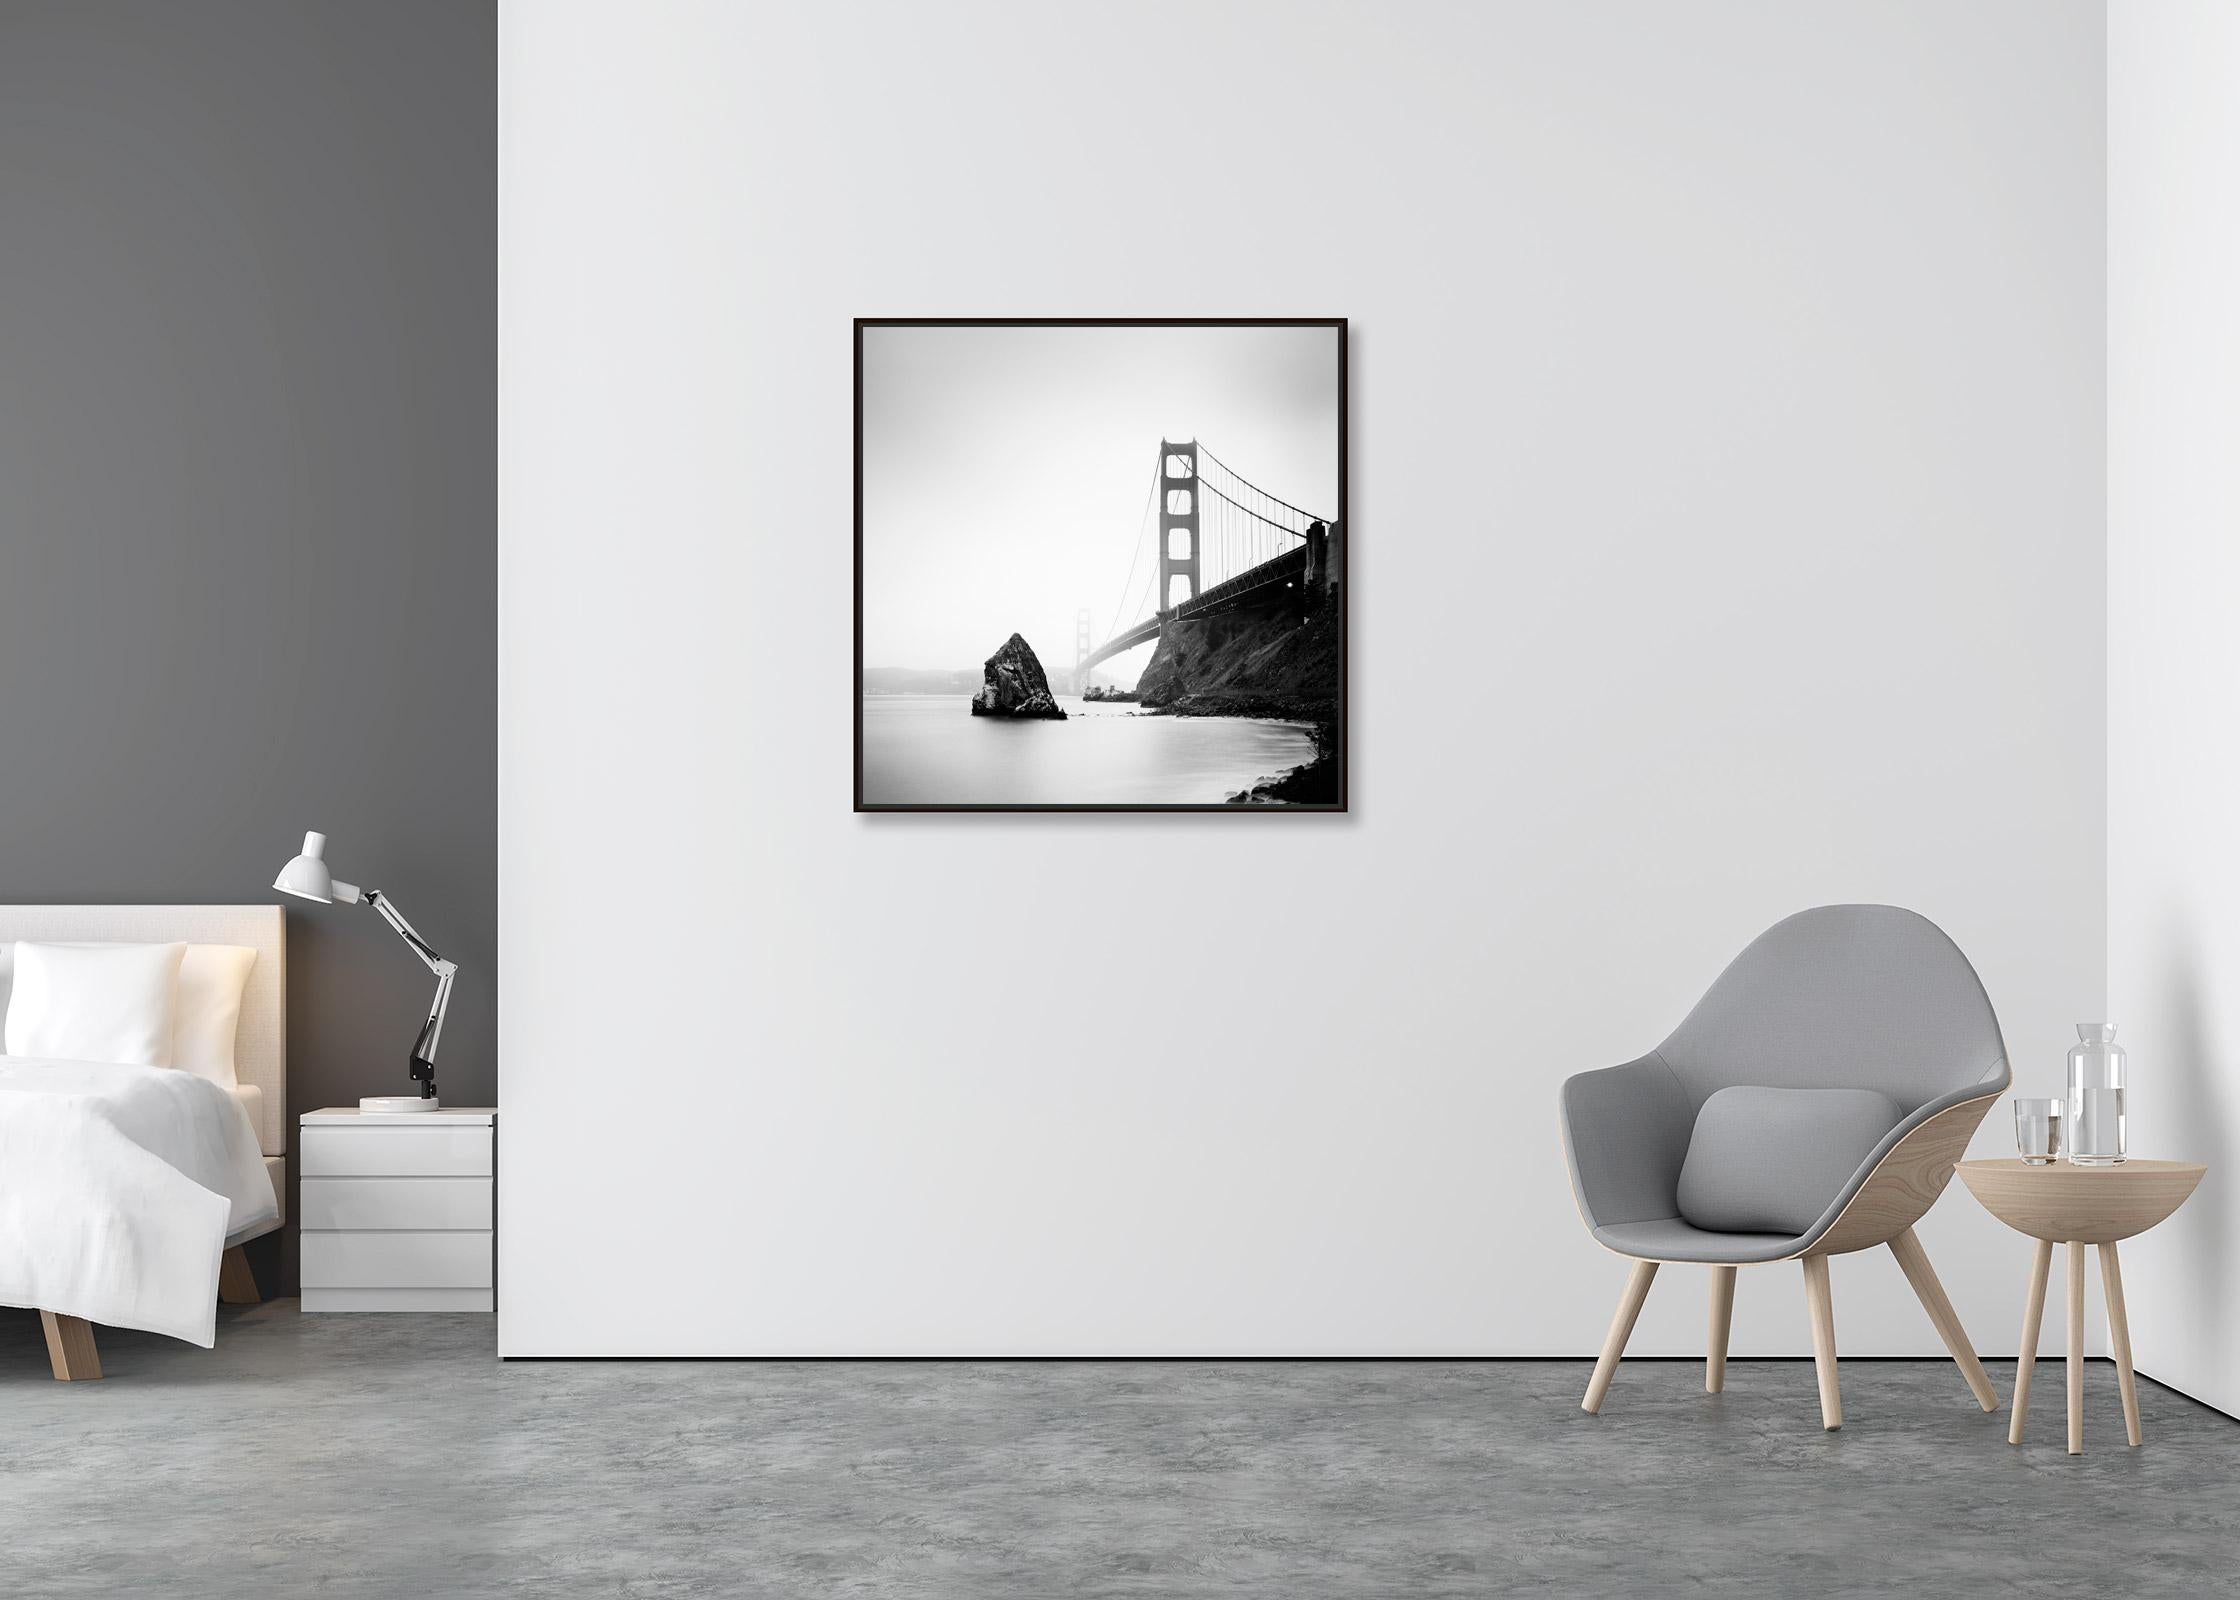 Golden Gate Bridge, fort point rock, San Francisco, b&w Landschaftsfotografie (Zeitgenössisch), Photograph, von Gerald Berghammer